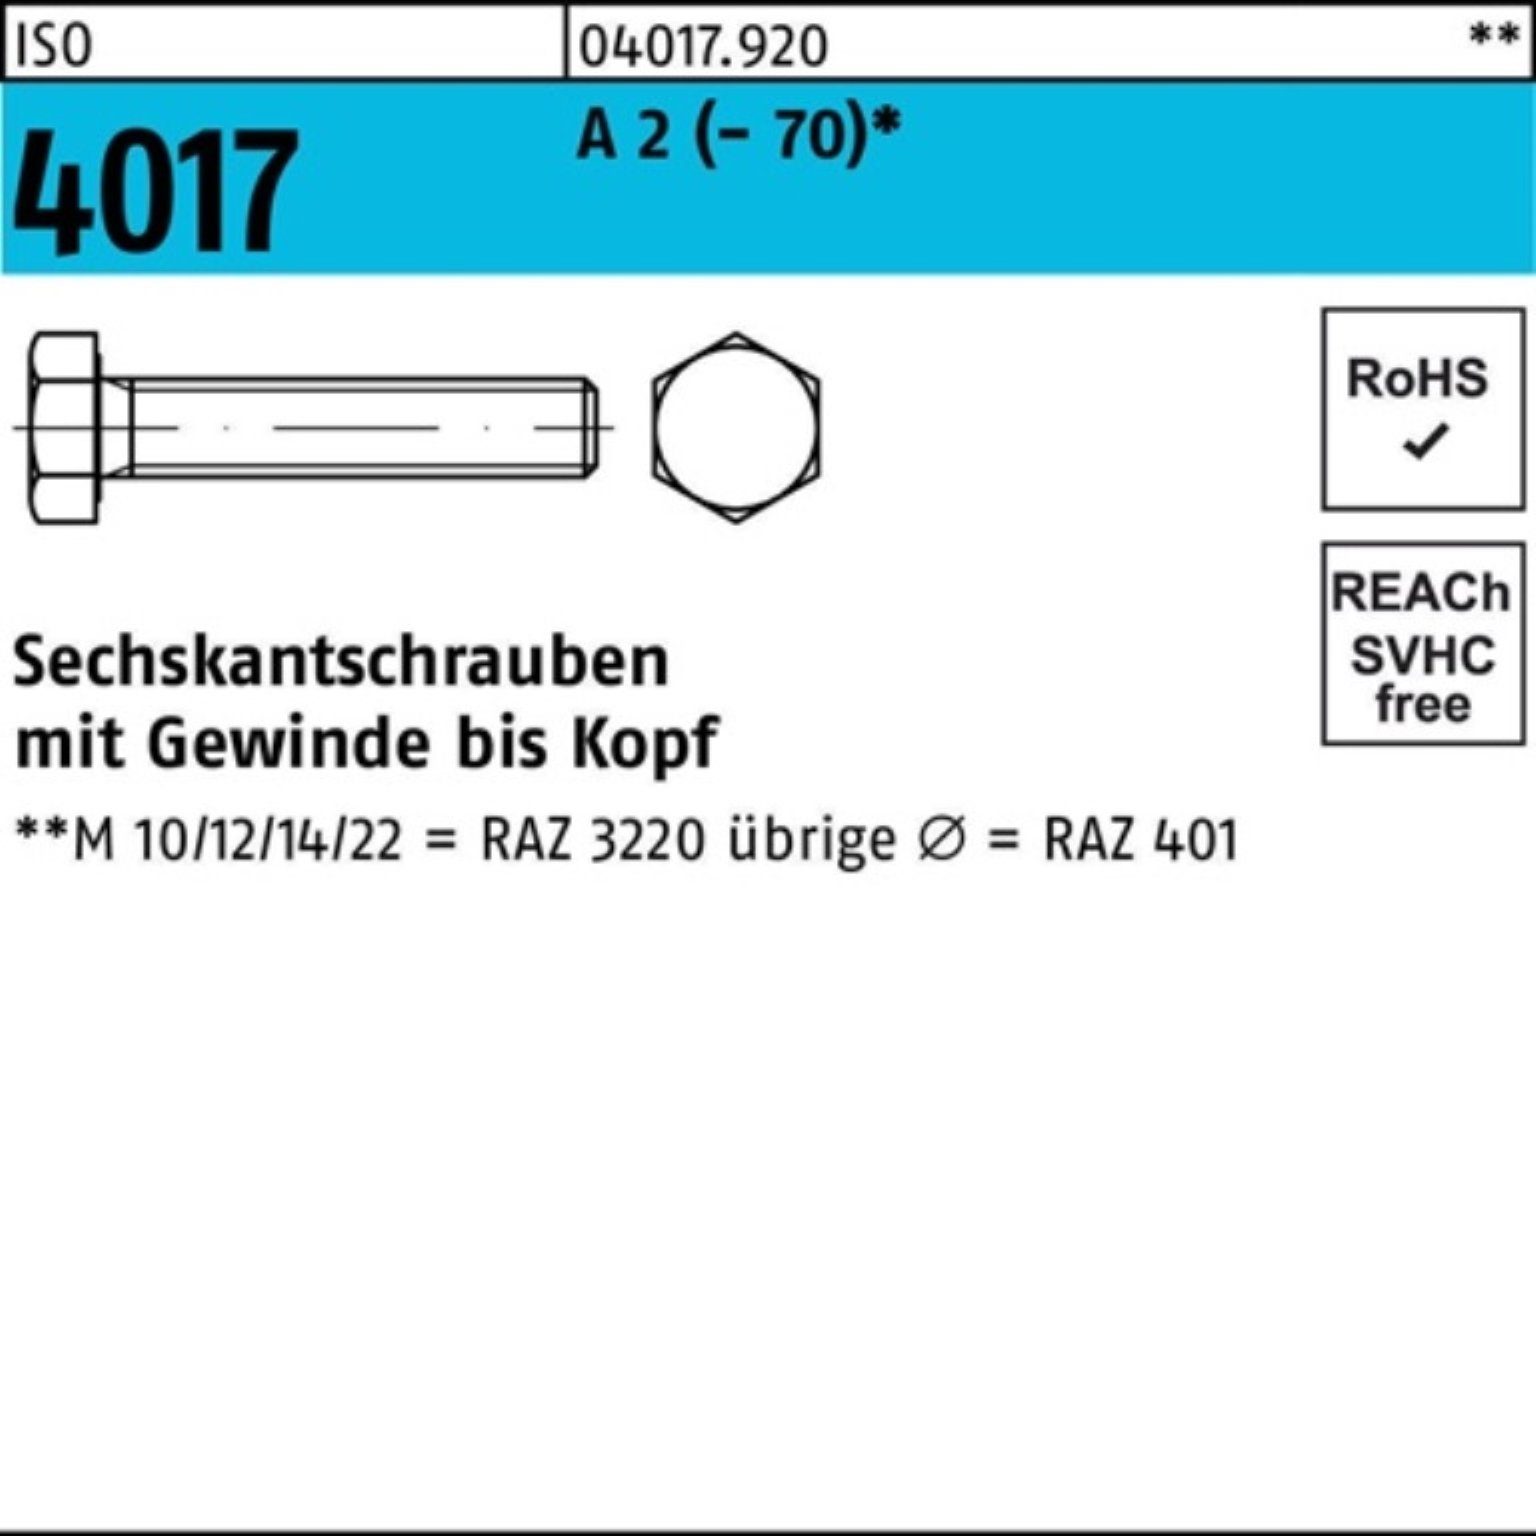 Bufab Sechskantschraube 100er Pack Sechskantschraube ISO 4017 VG M30x 60 A 2 (70) 1 Stück I | Schrauben